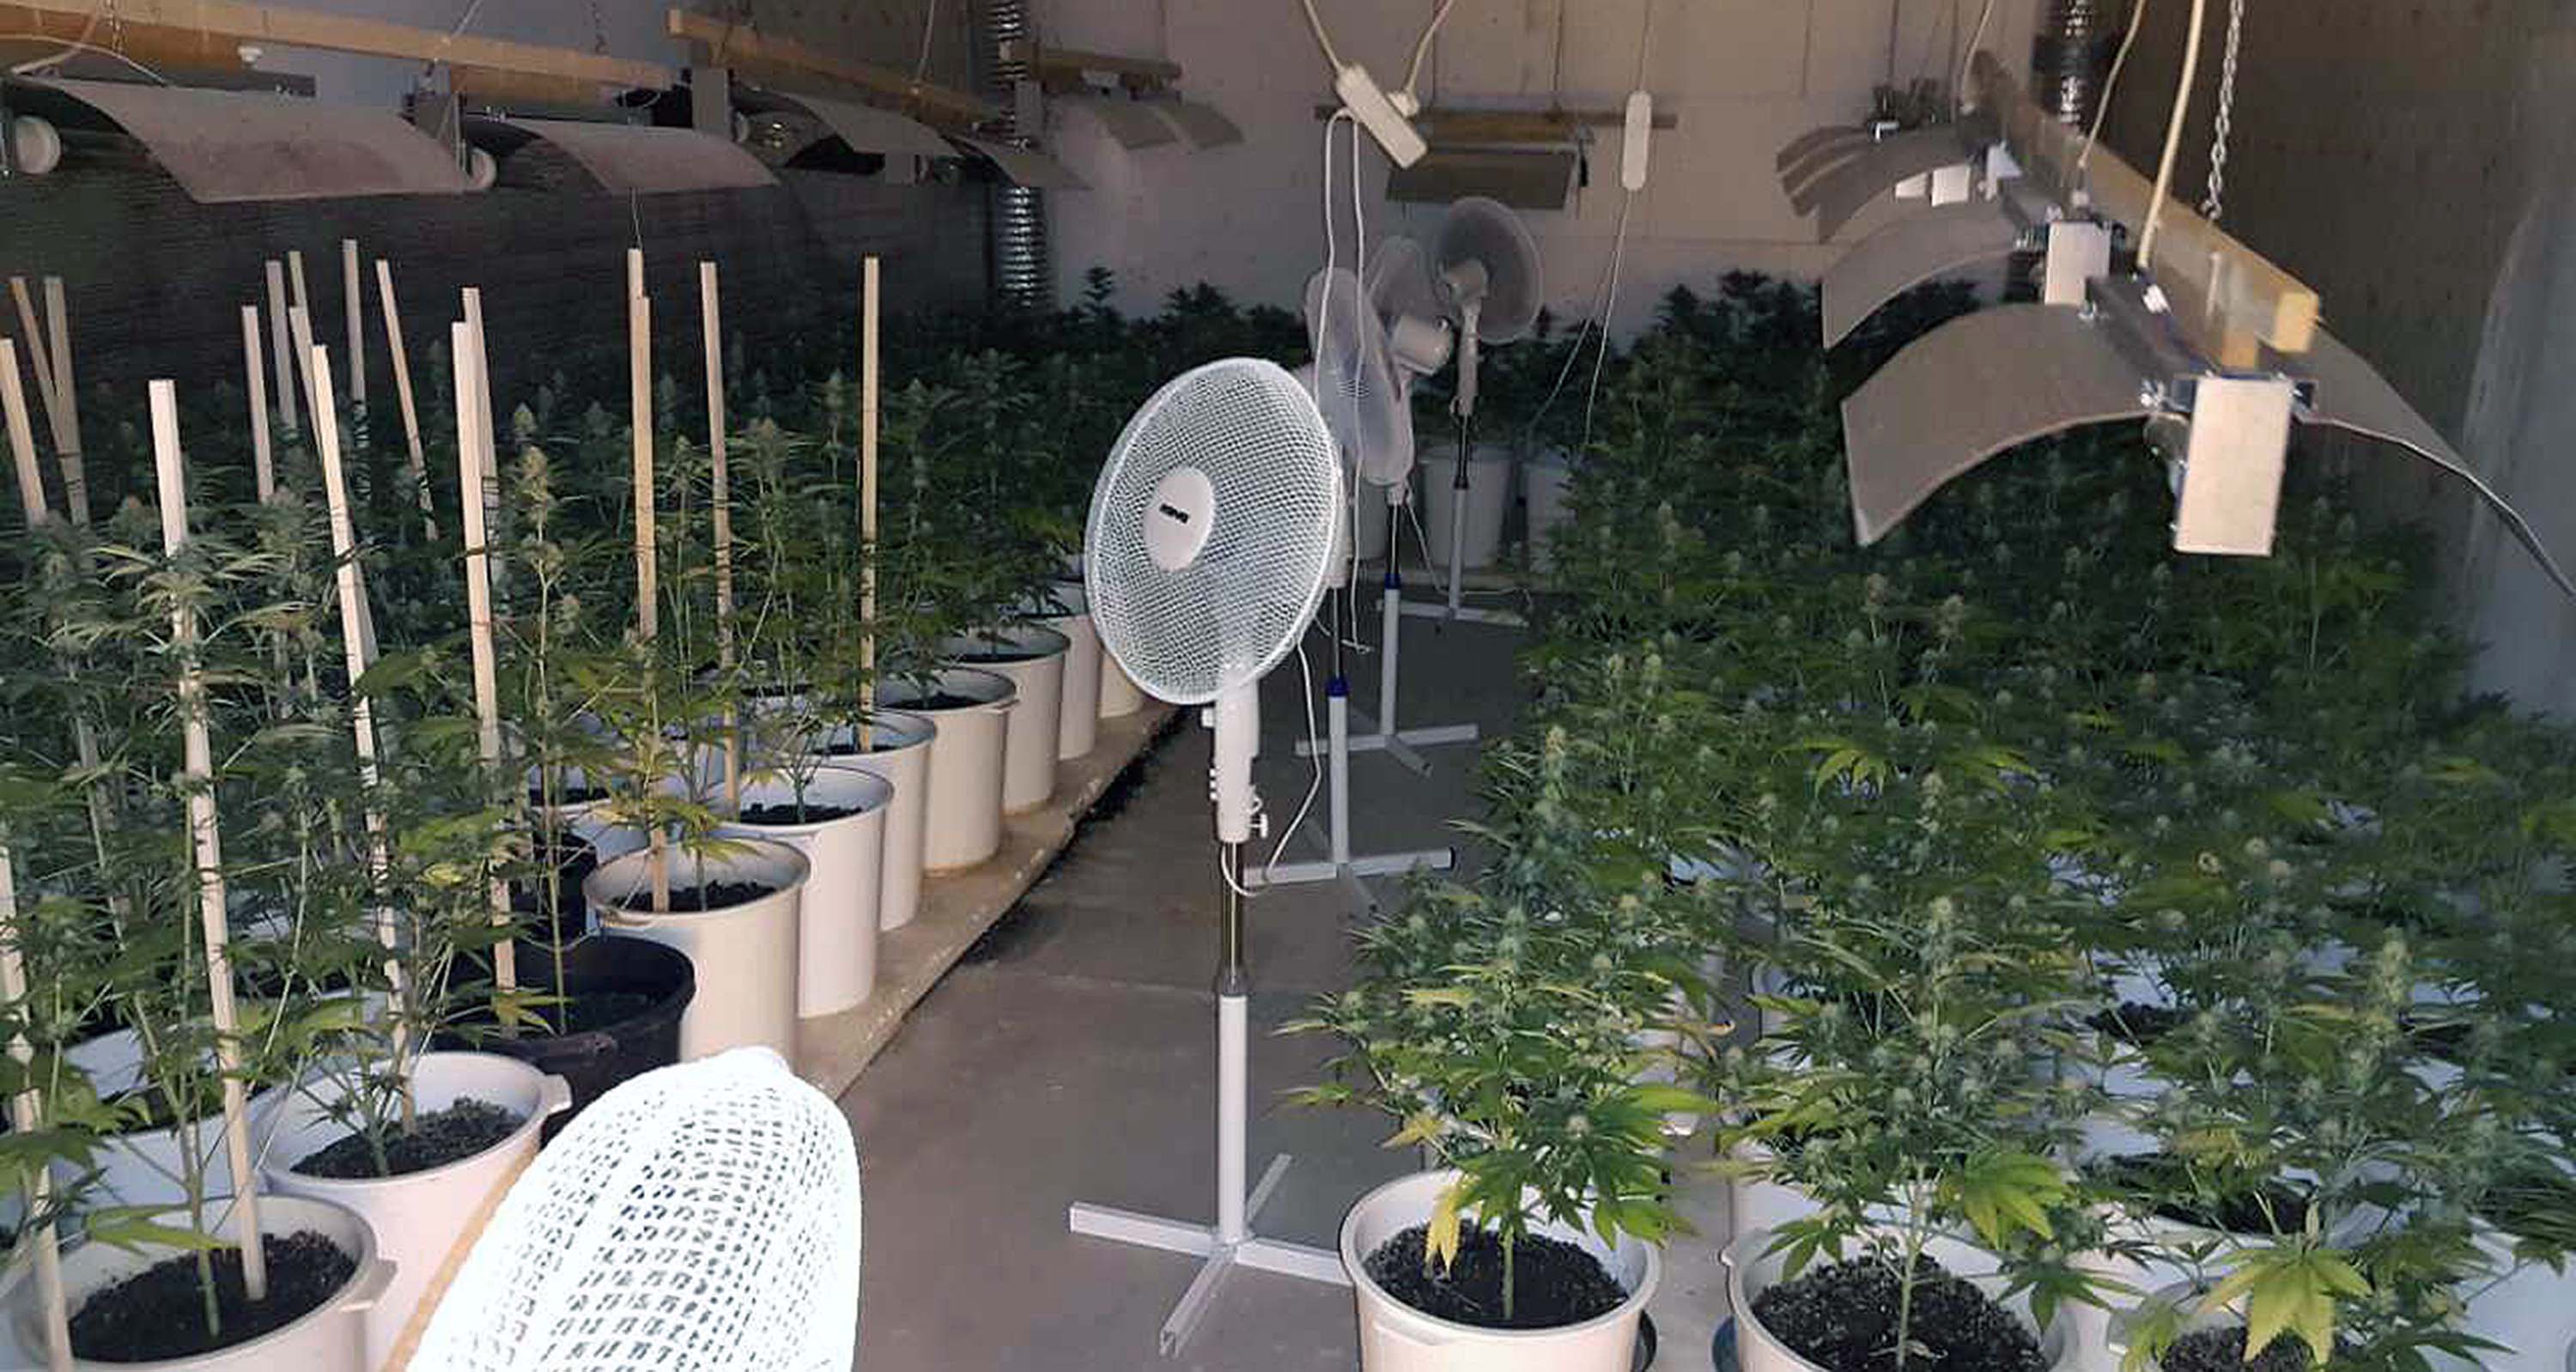 Otkriveno pet laboratorija za uzgoj marihuane, zaplena više od 1.500 sadnica i 10 kilograma opojne droge